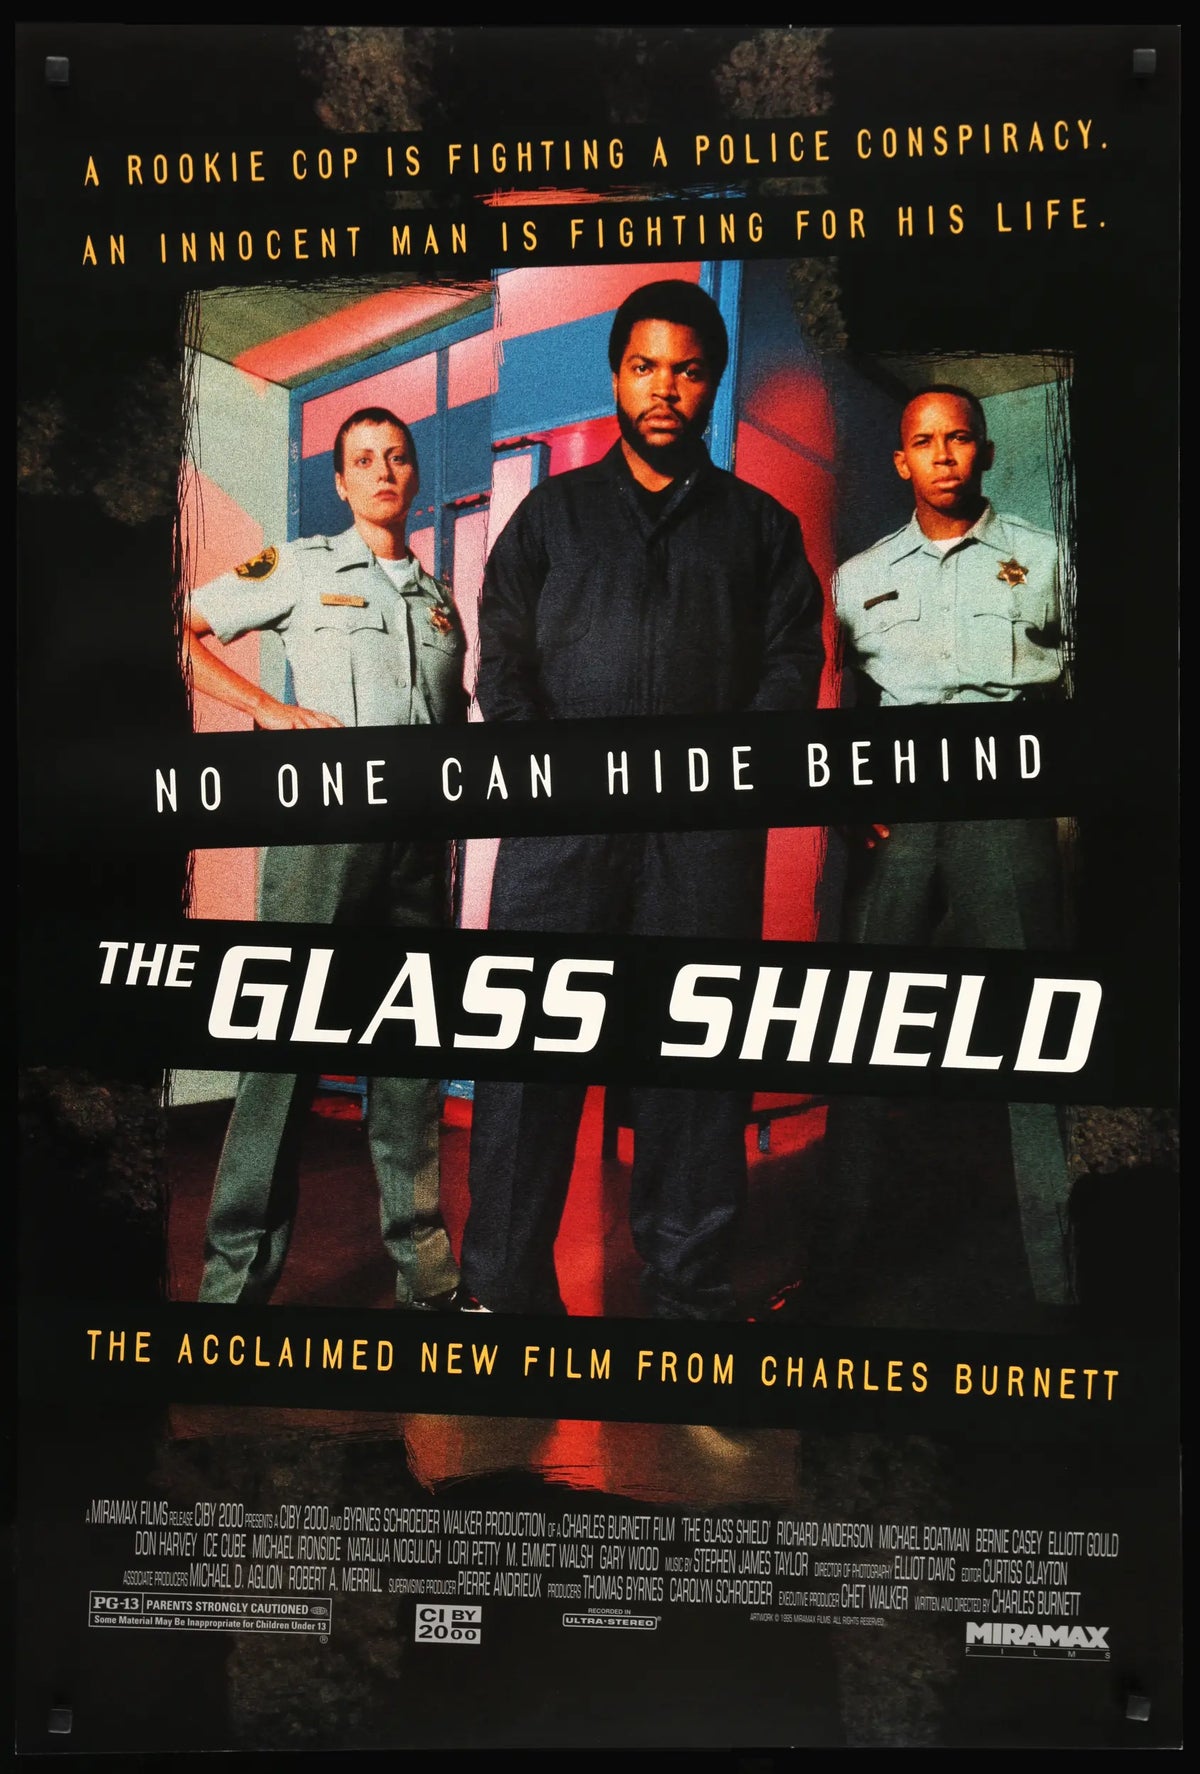 Glass Shield (1995) original movie poster for sale at Original Film Art